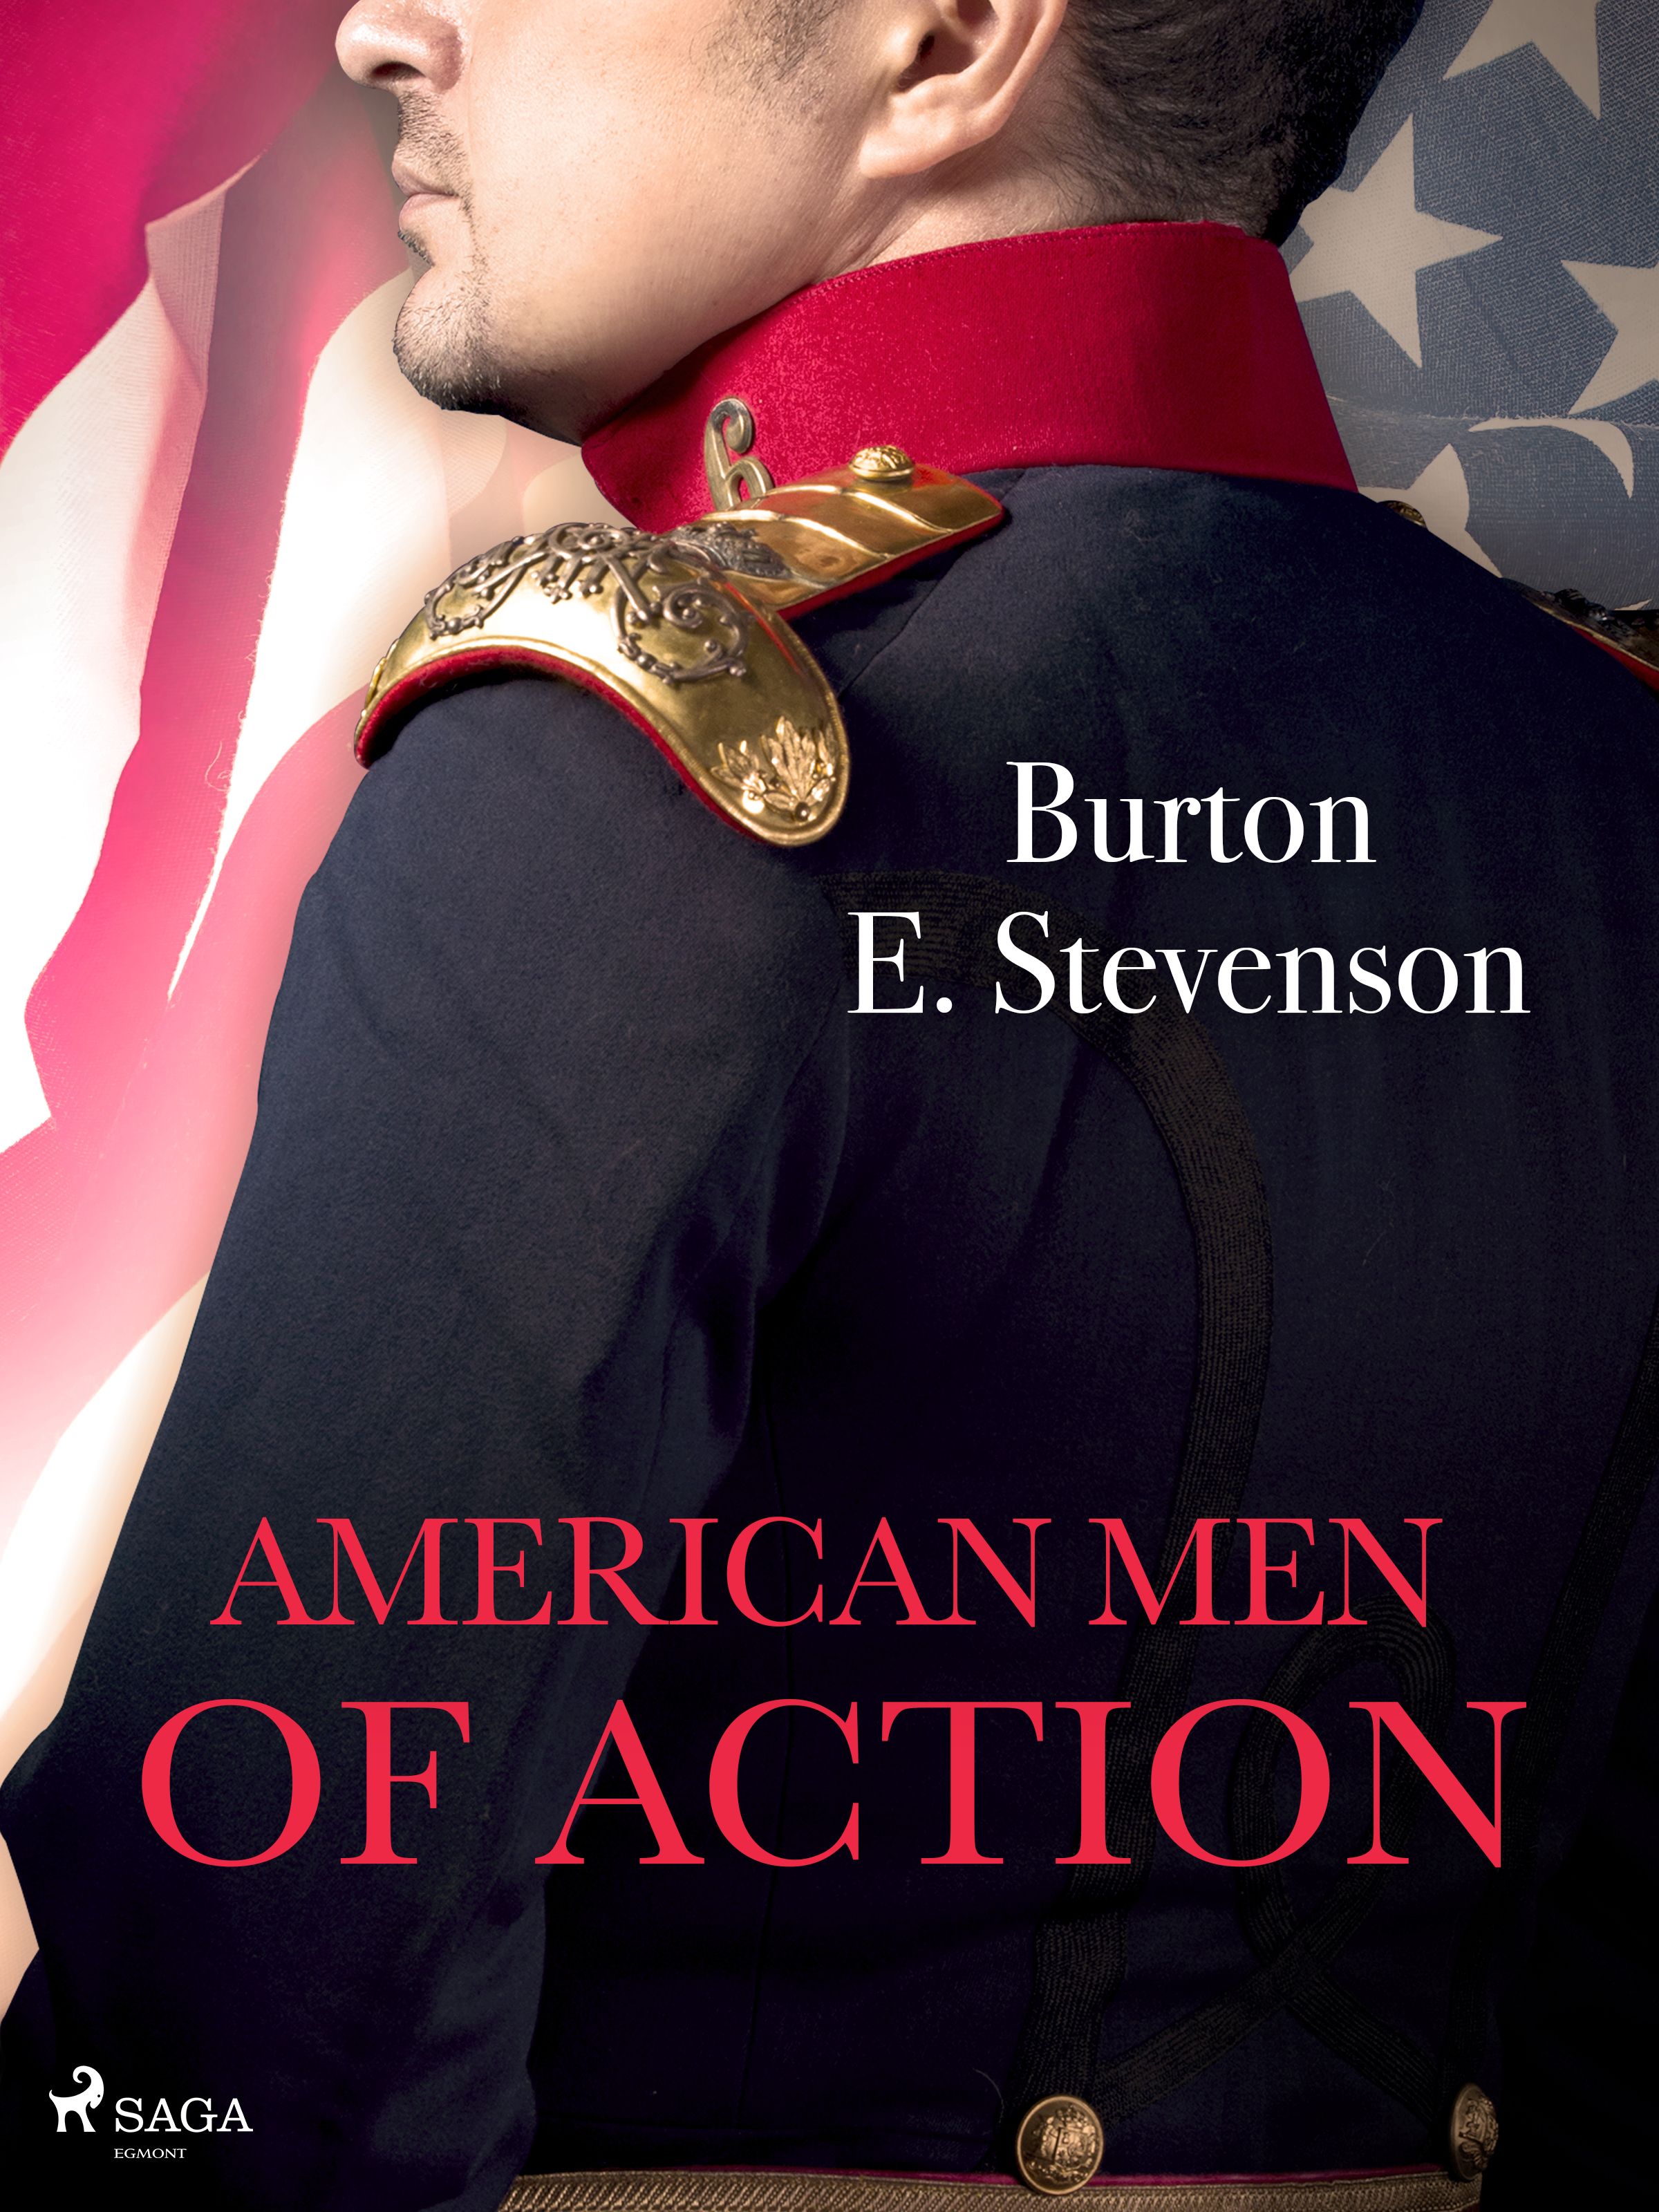 American Men of Action, e-bog af Burton E. Stevenson